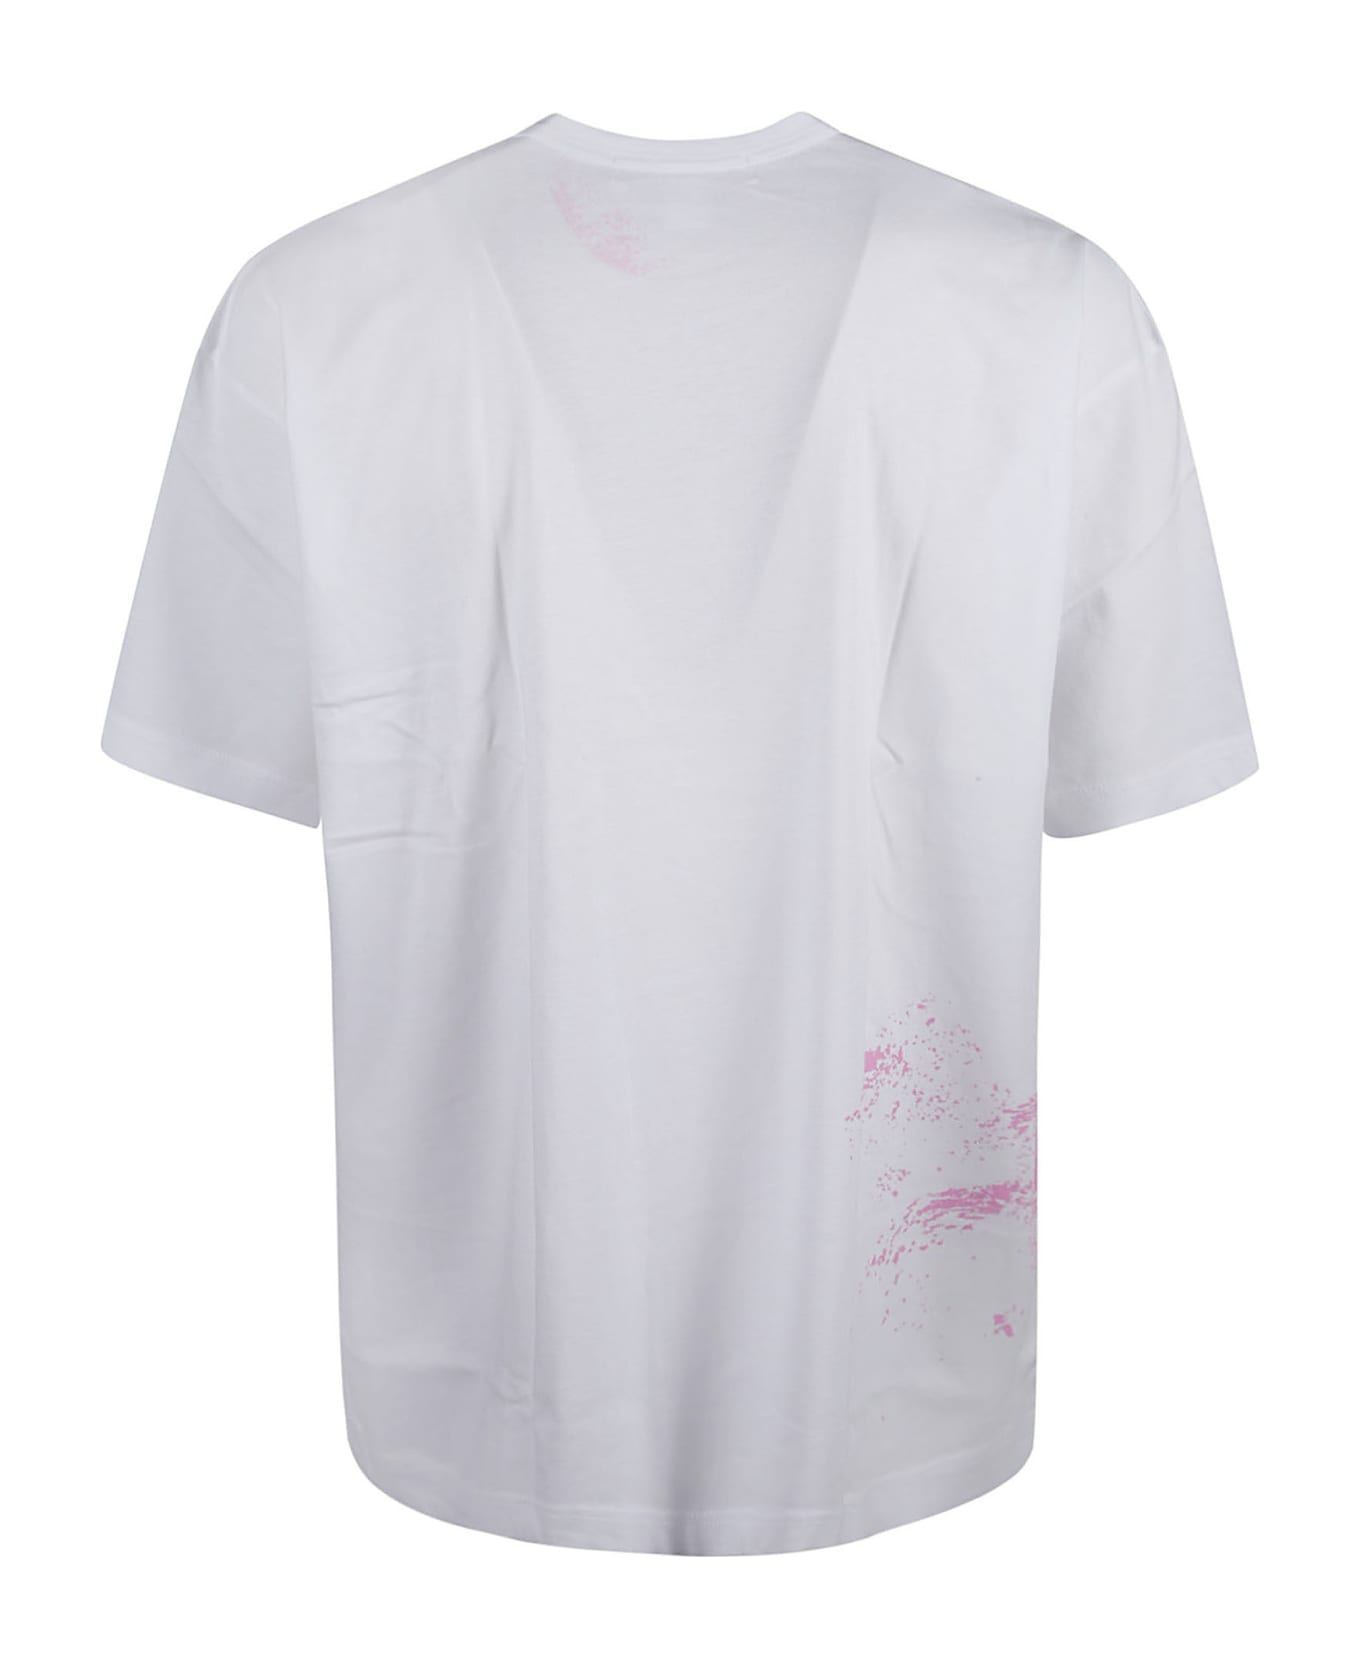 Comme des Garçons Shirt Paint Detail T-shirt - White シャツ